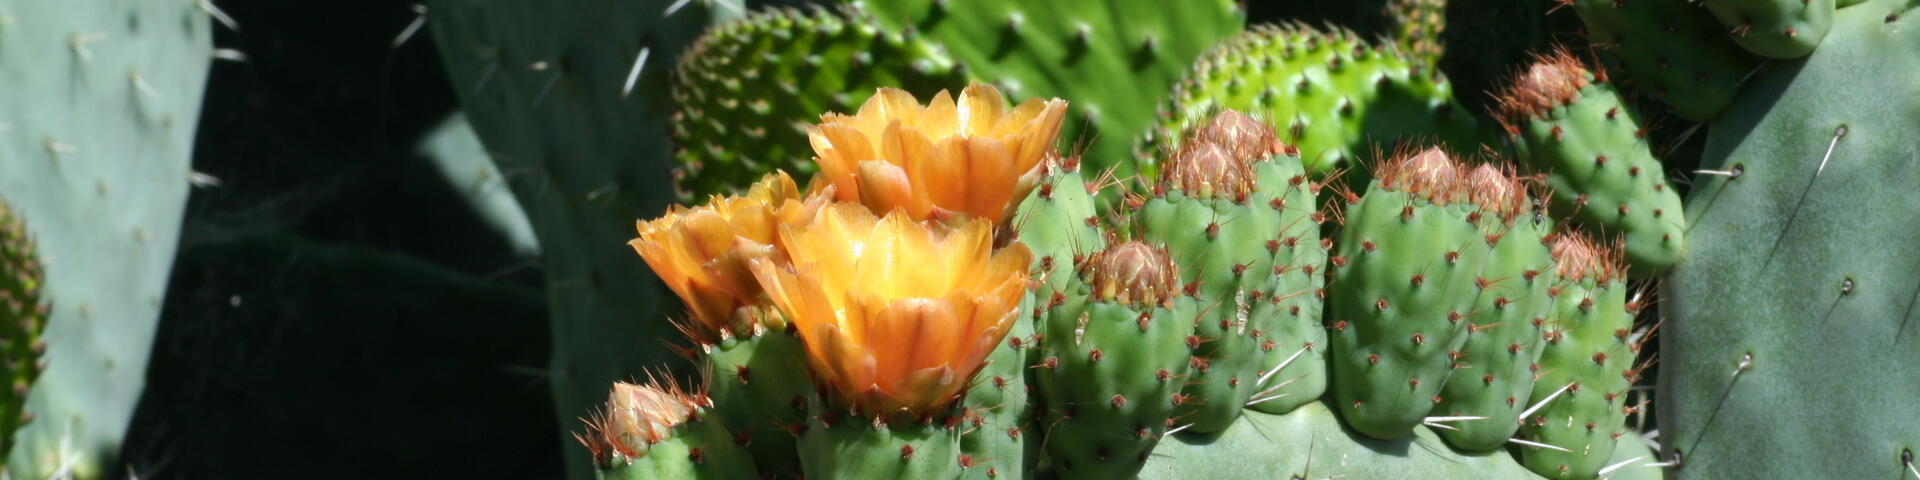 Cactus andalousie